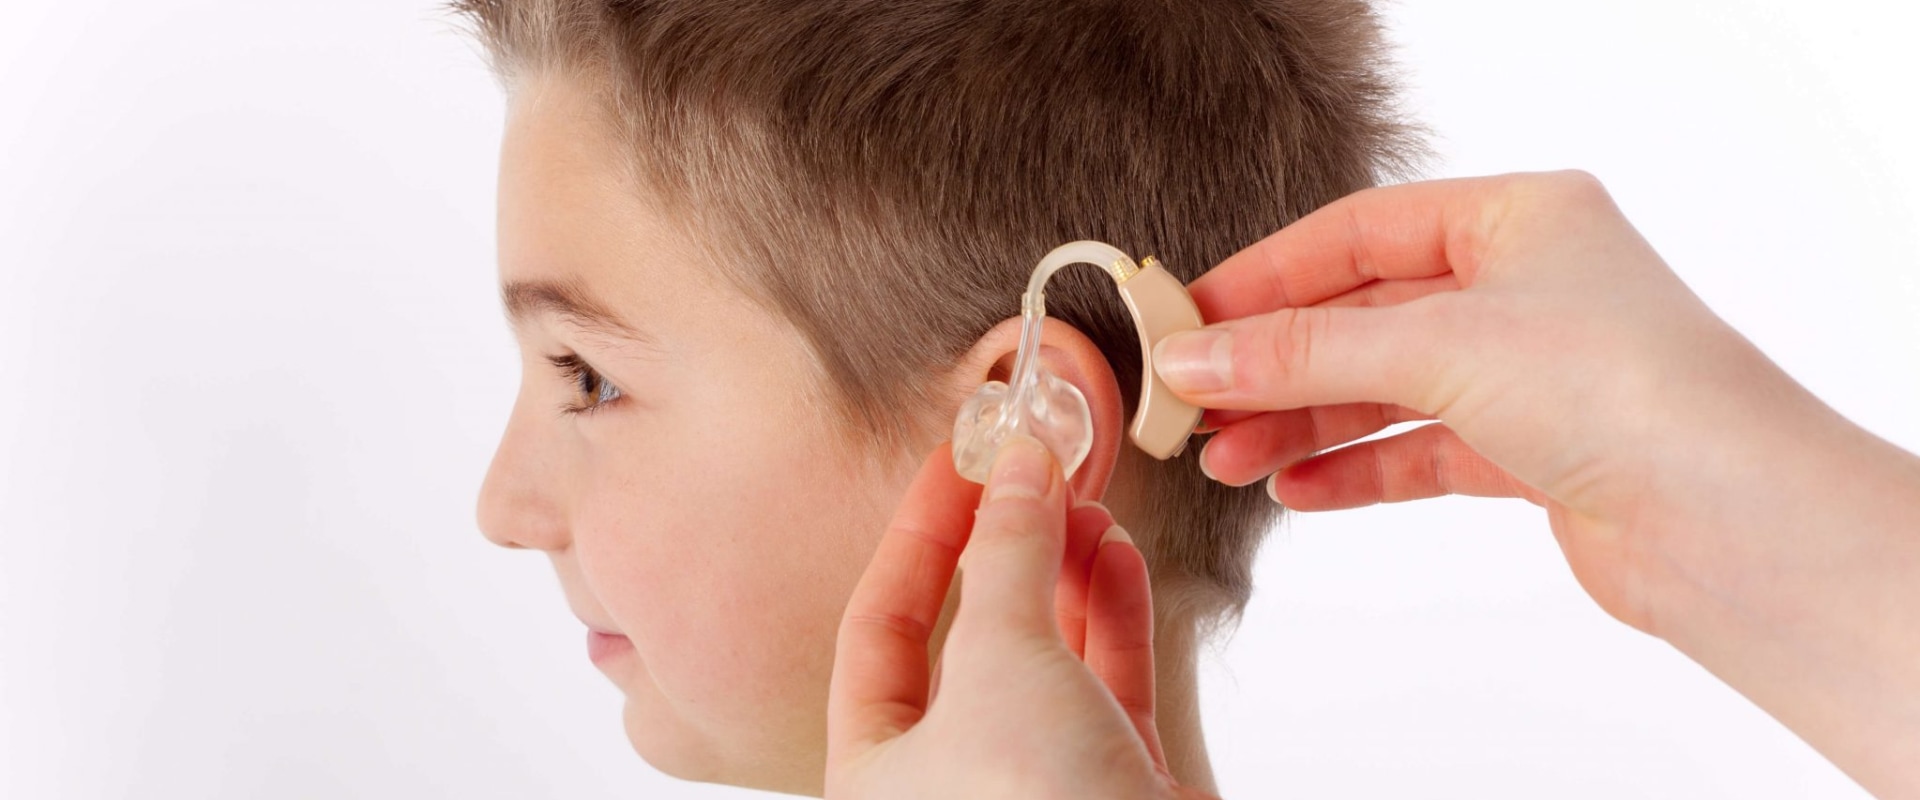 Can an slp diagnose hearing loss?